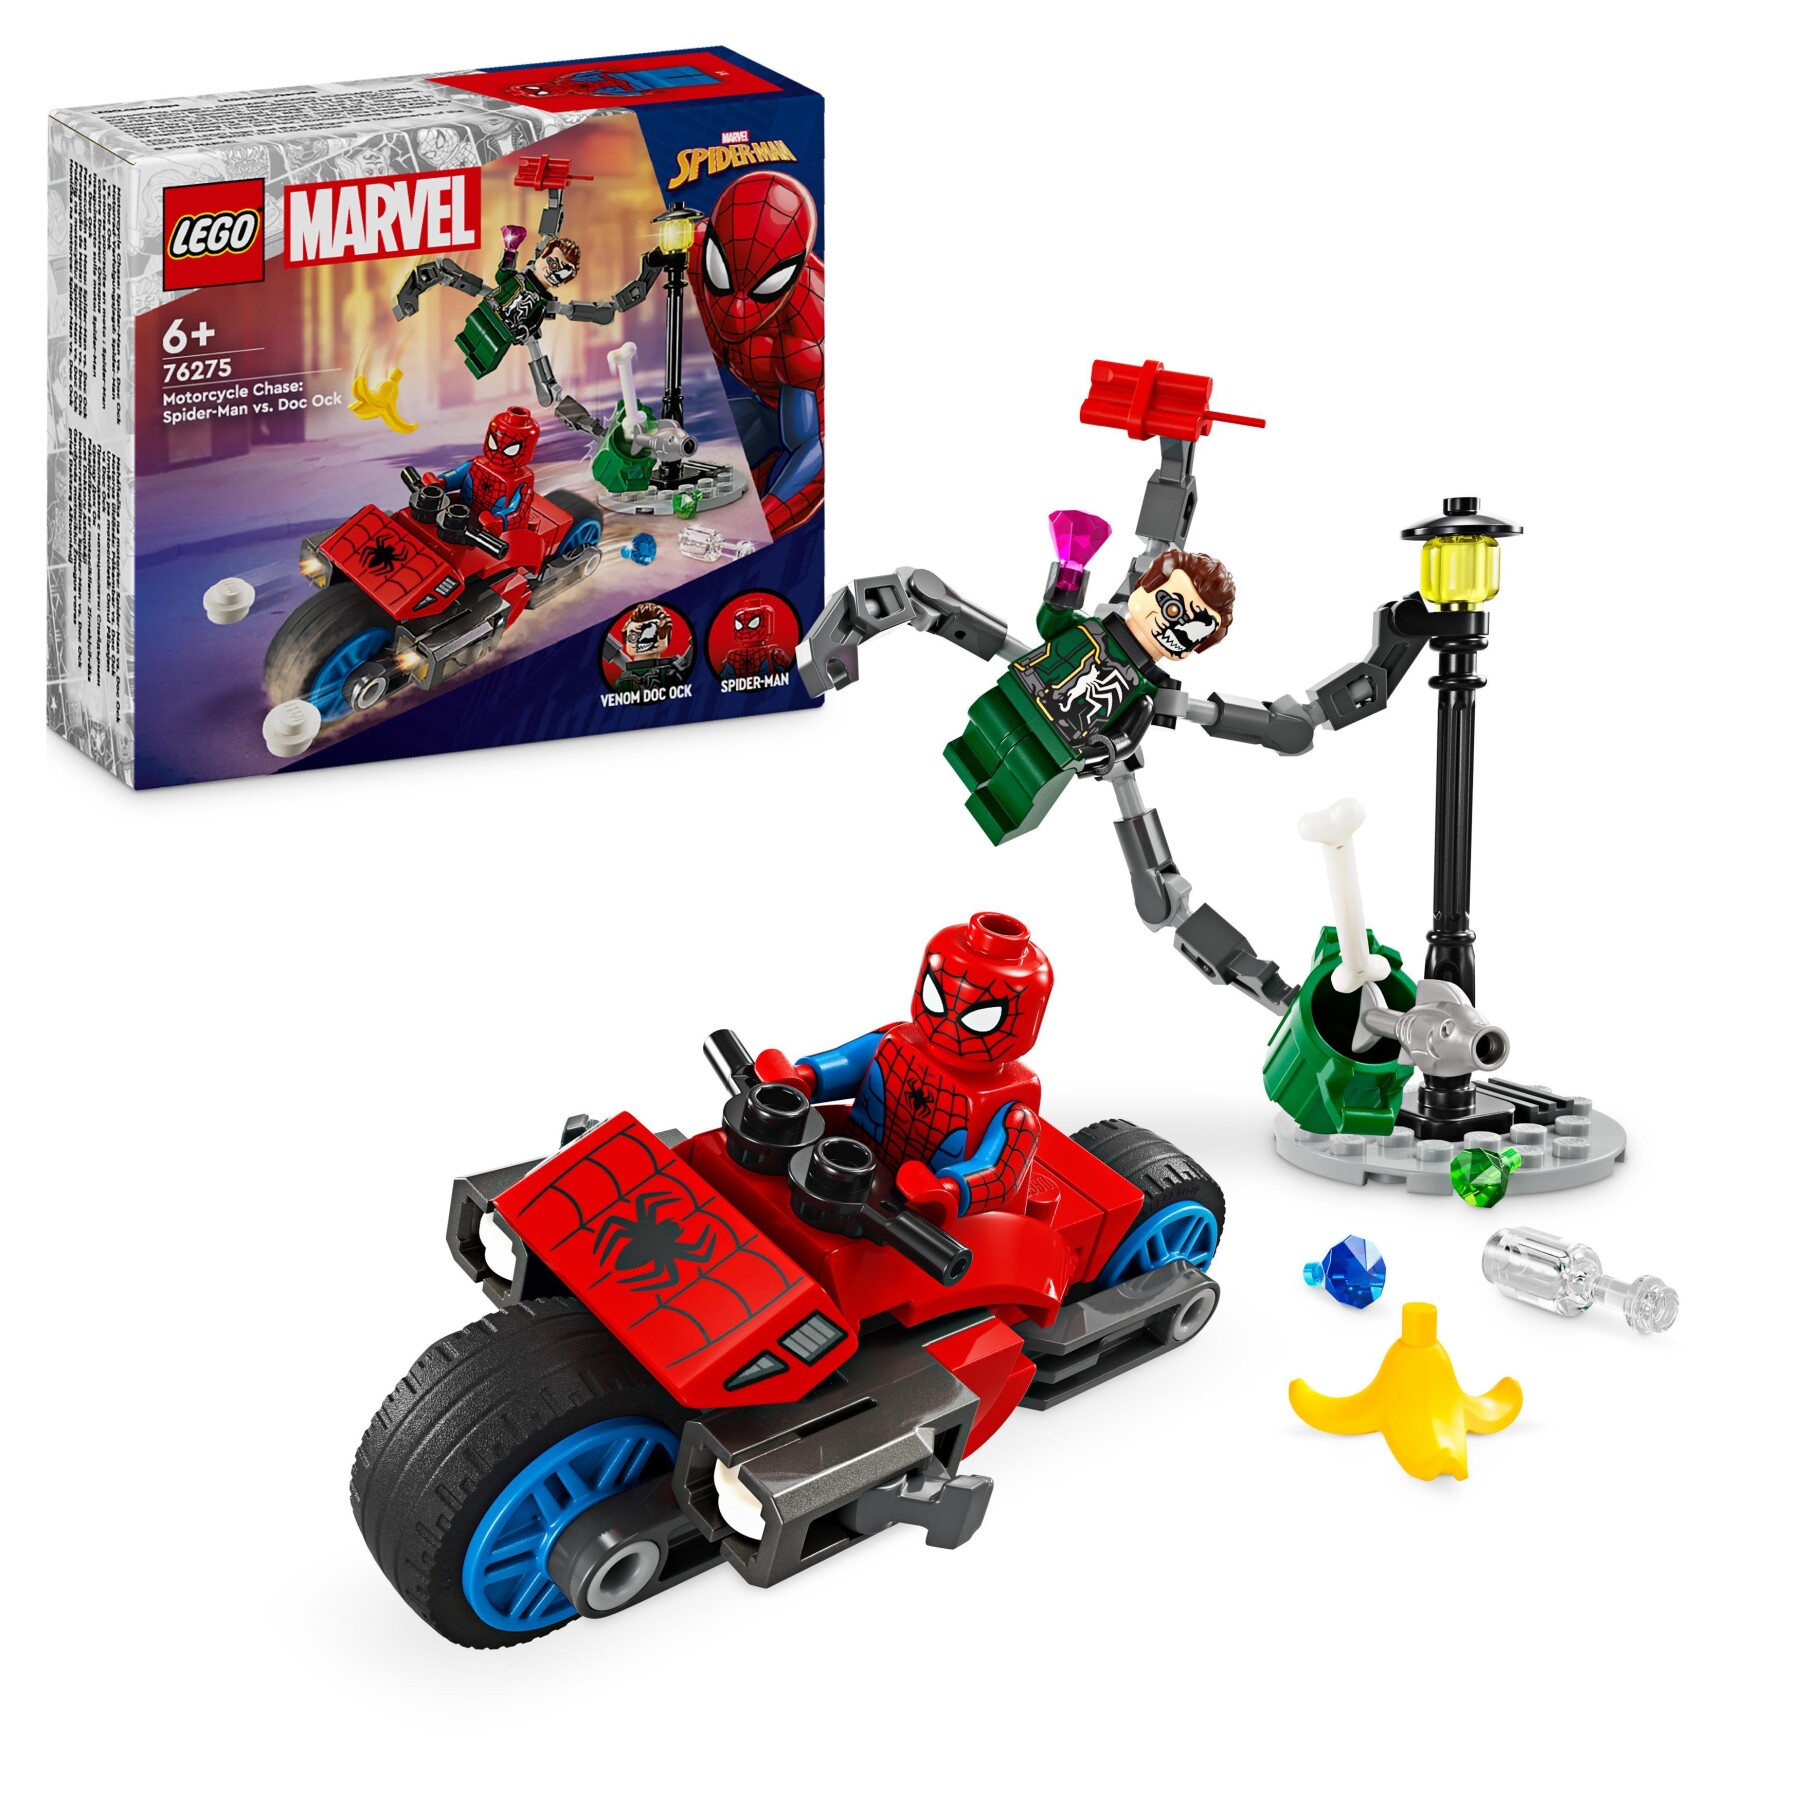 Lego marvel 76275 inseguimento sulla moto: spider-man vs. doc ock, motocicletta giocattolo spara ragnatele per bambini 6+ anni - LEGO SUPER HEROES